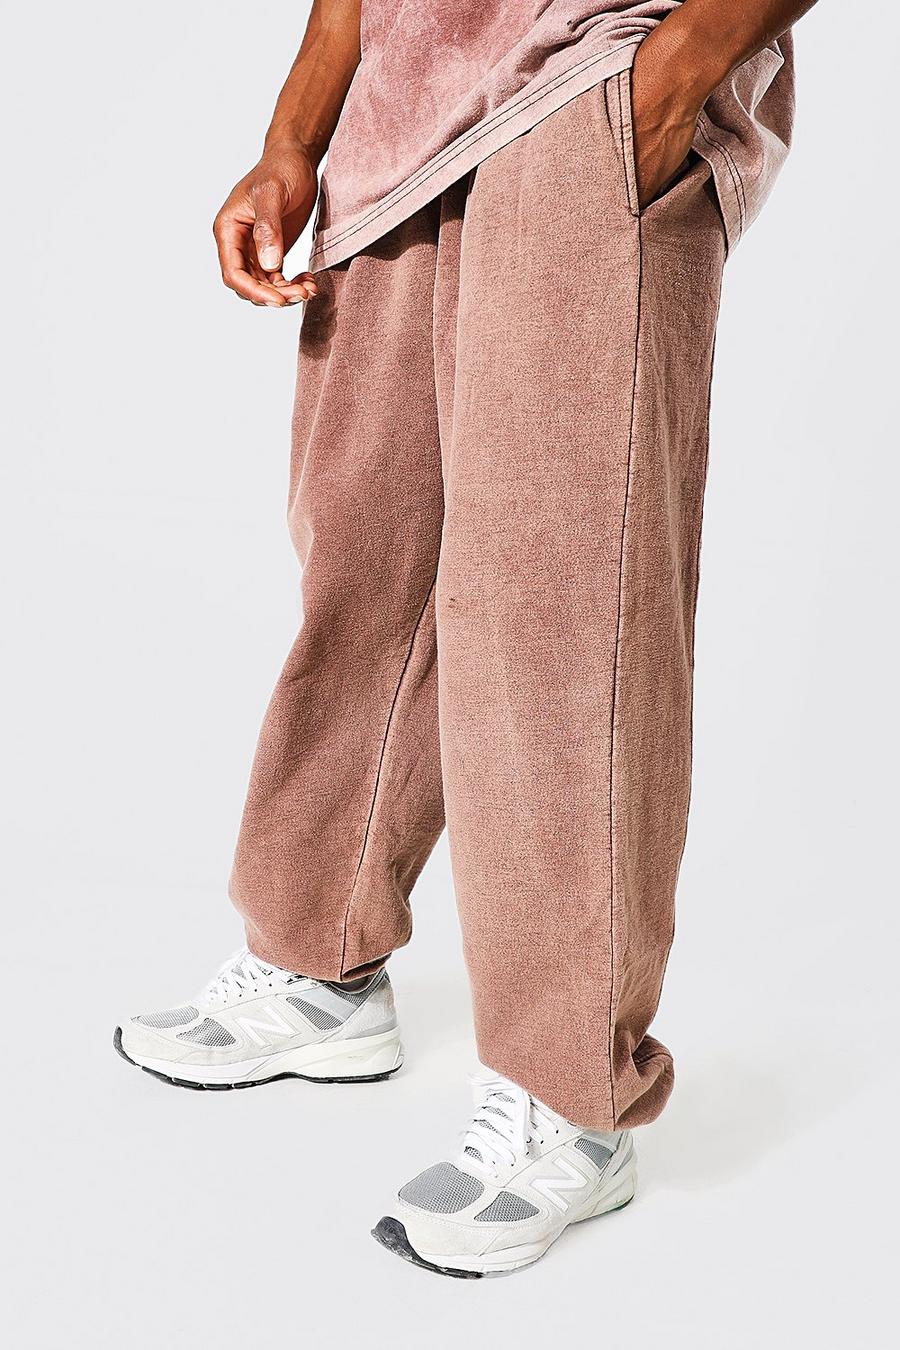 Pantaloni tuta oversize slavati, Chocolate marrón image number 1